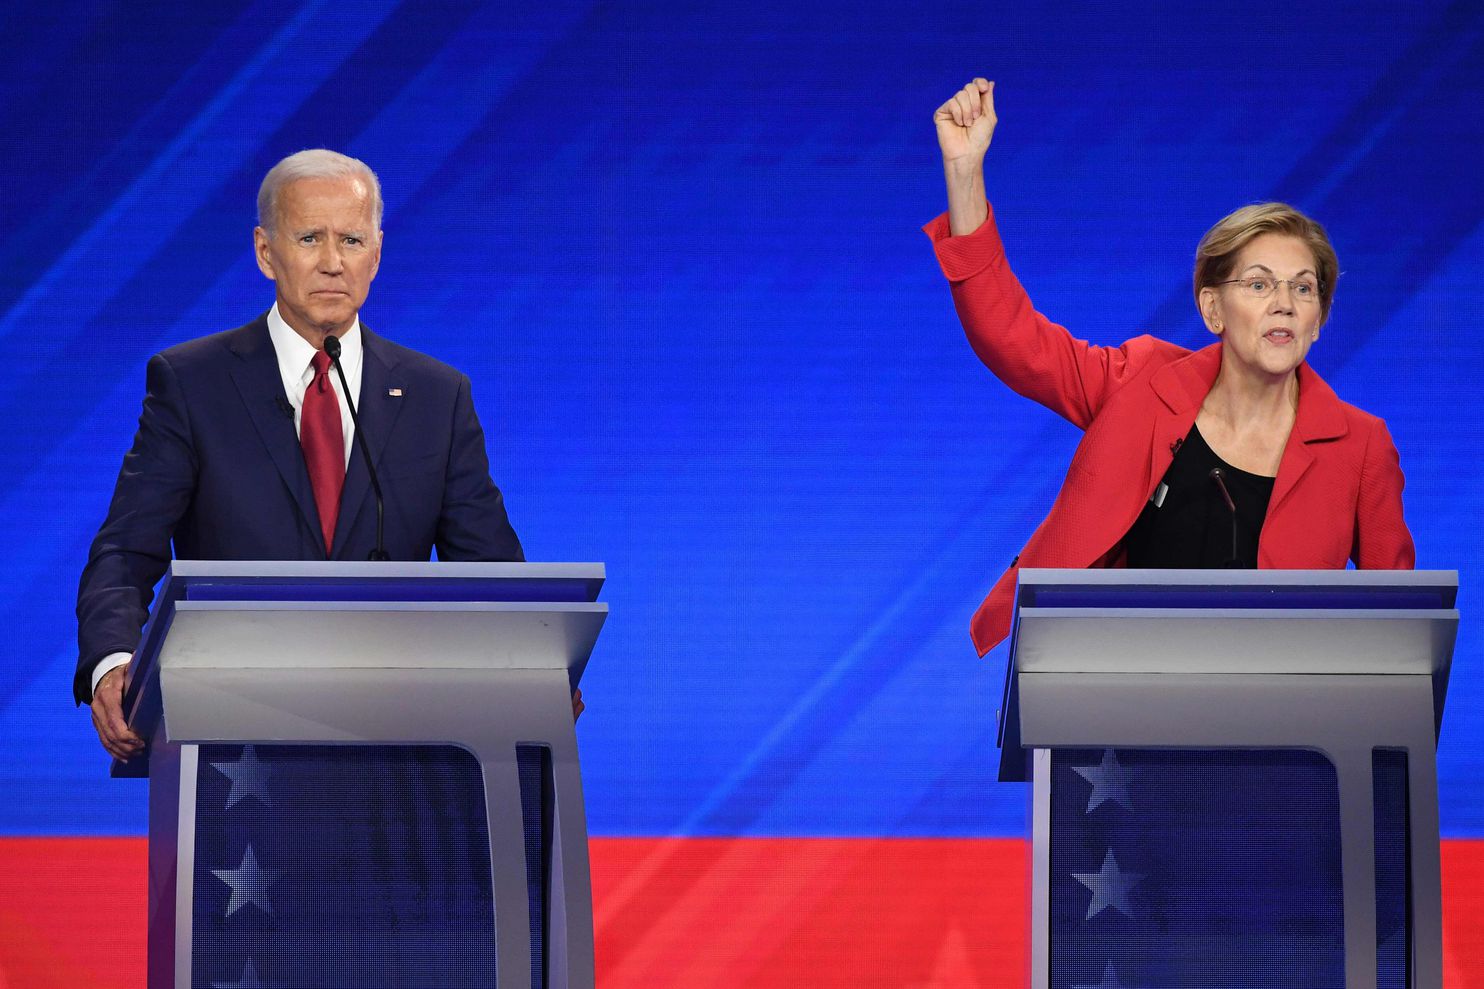 US Presidential Elections 2020: Warren ahead of Biden1484 x 989